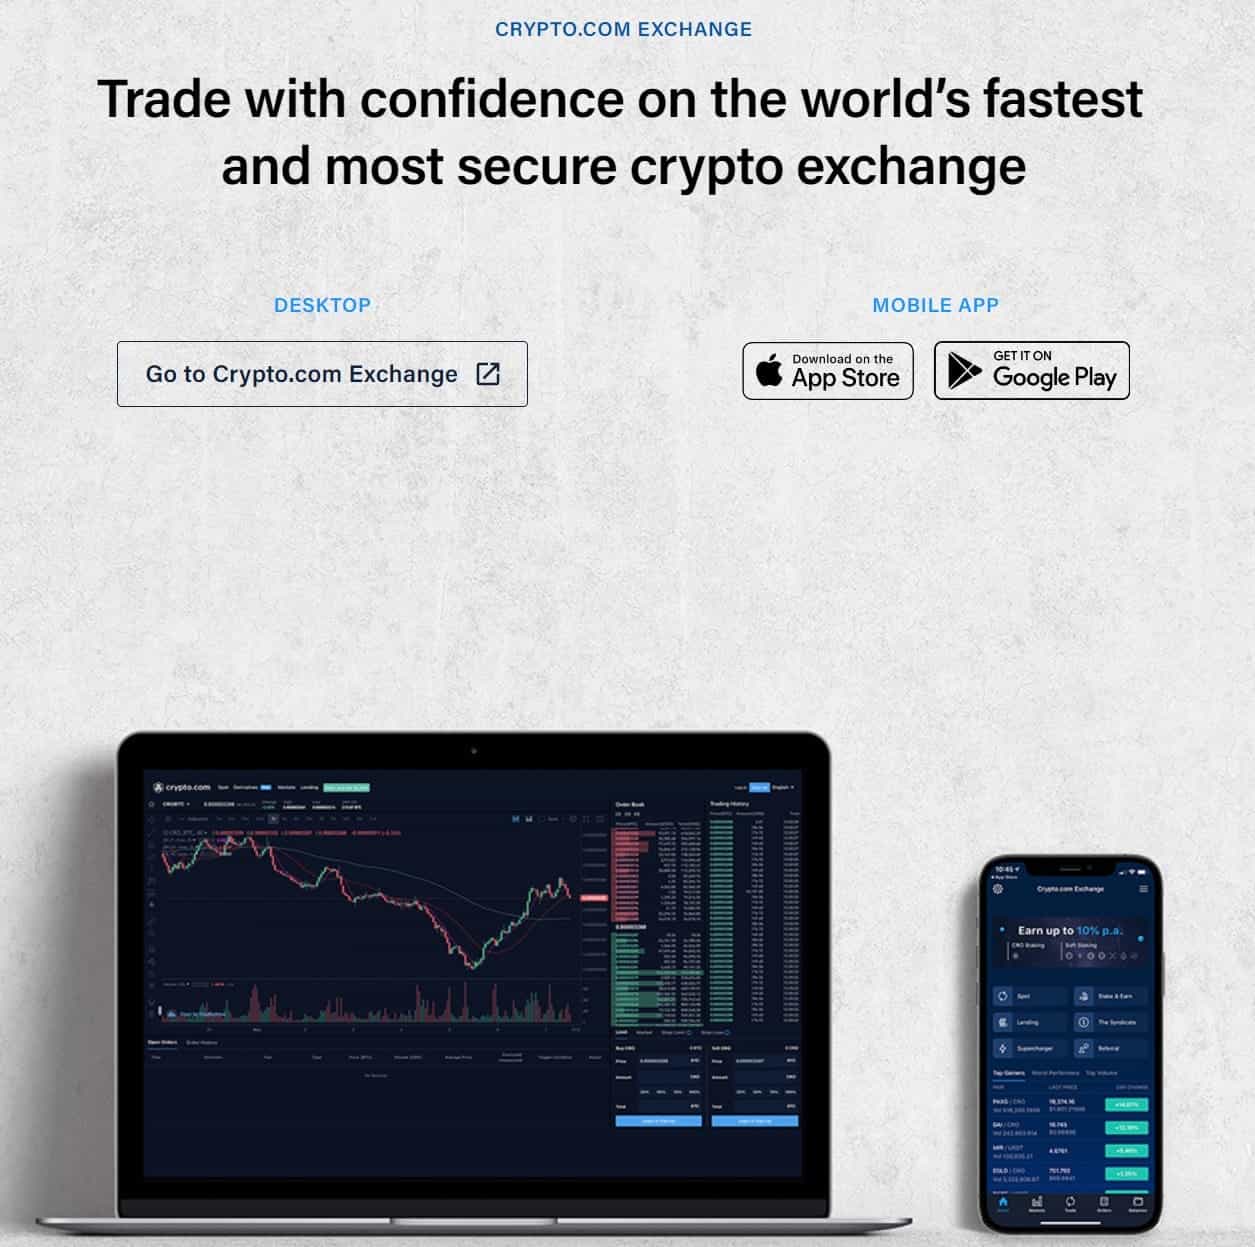 crypto.com exchange image